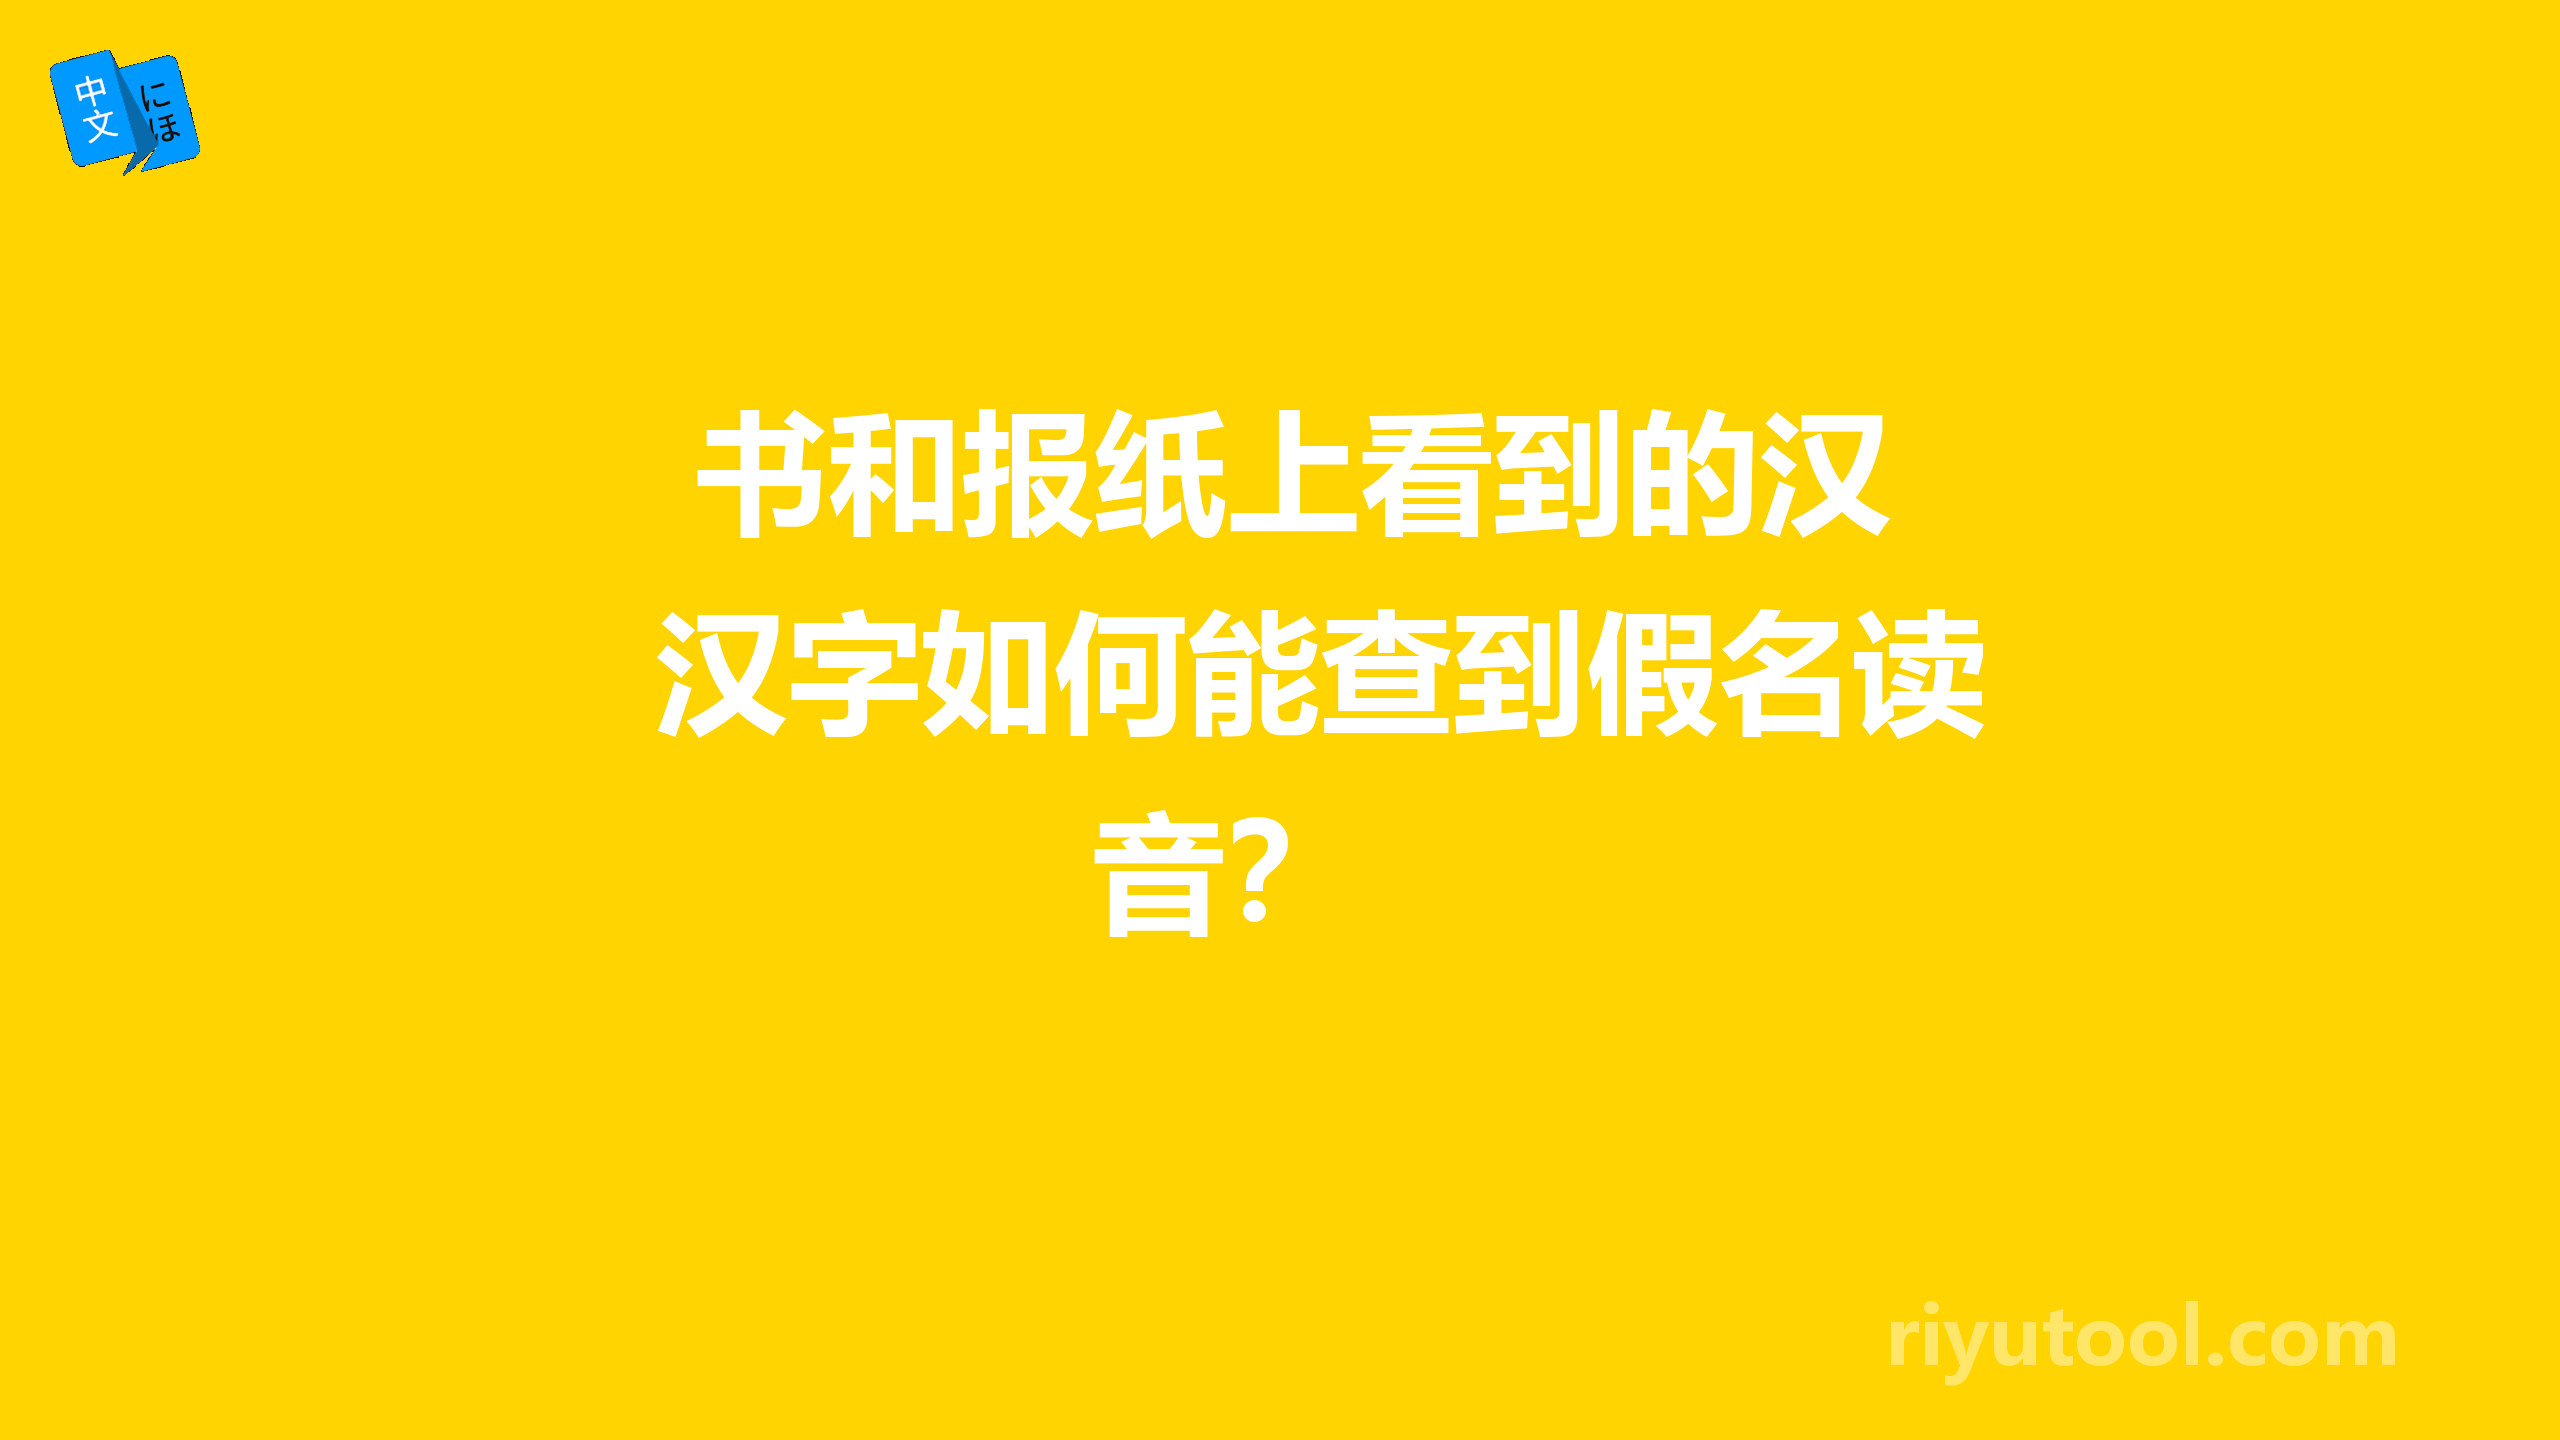  书和报纸上看到的汉字如何能查到假名读音？ 